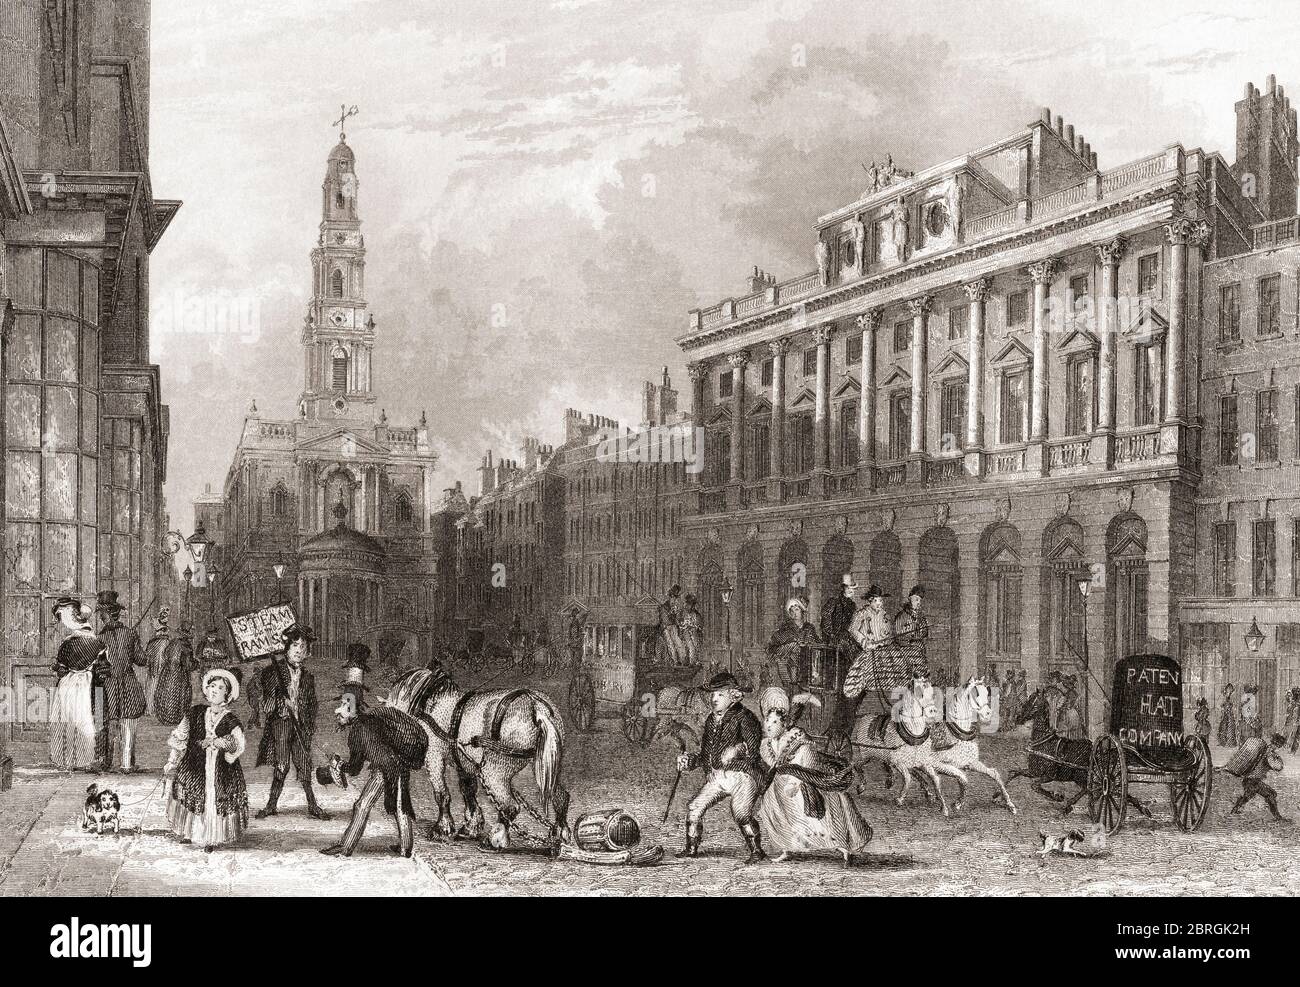 Somerset House, The Strand, Londra, Inghilterra, 19 ° secolo. Dalla storia di Londra: Illustrato dalle viste a Londra e a Westminster, pubblicato intorno al 1838. Foto Stock